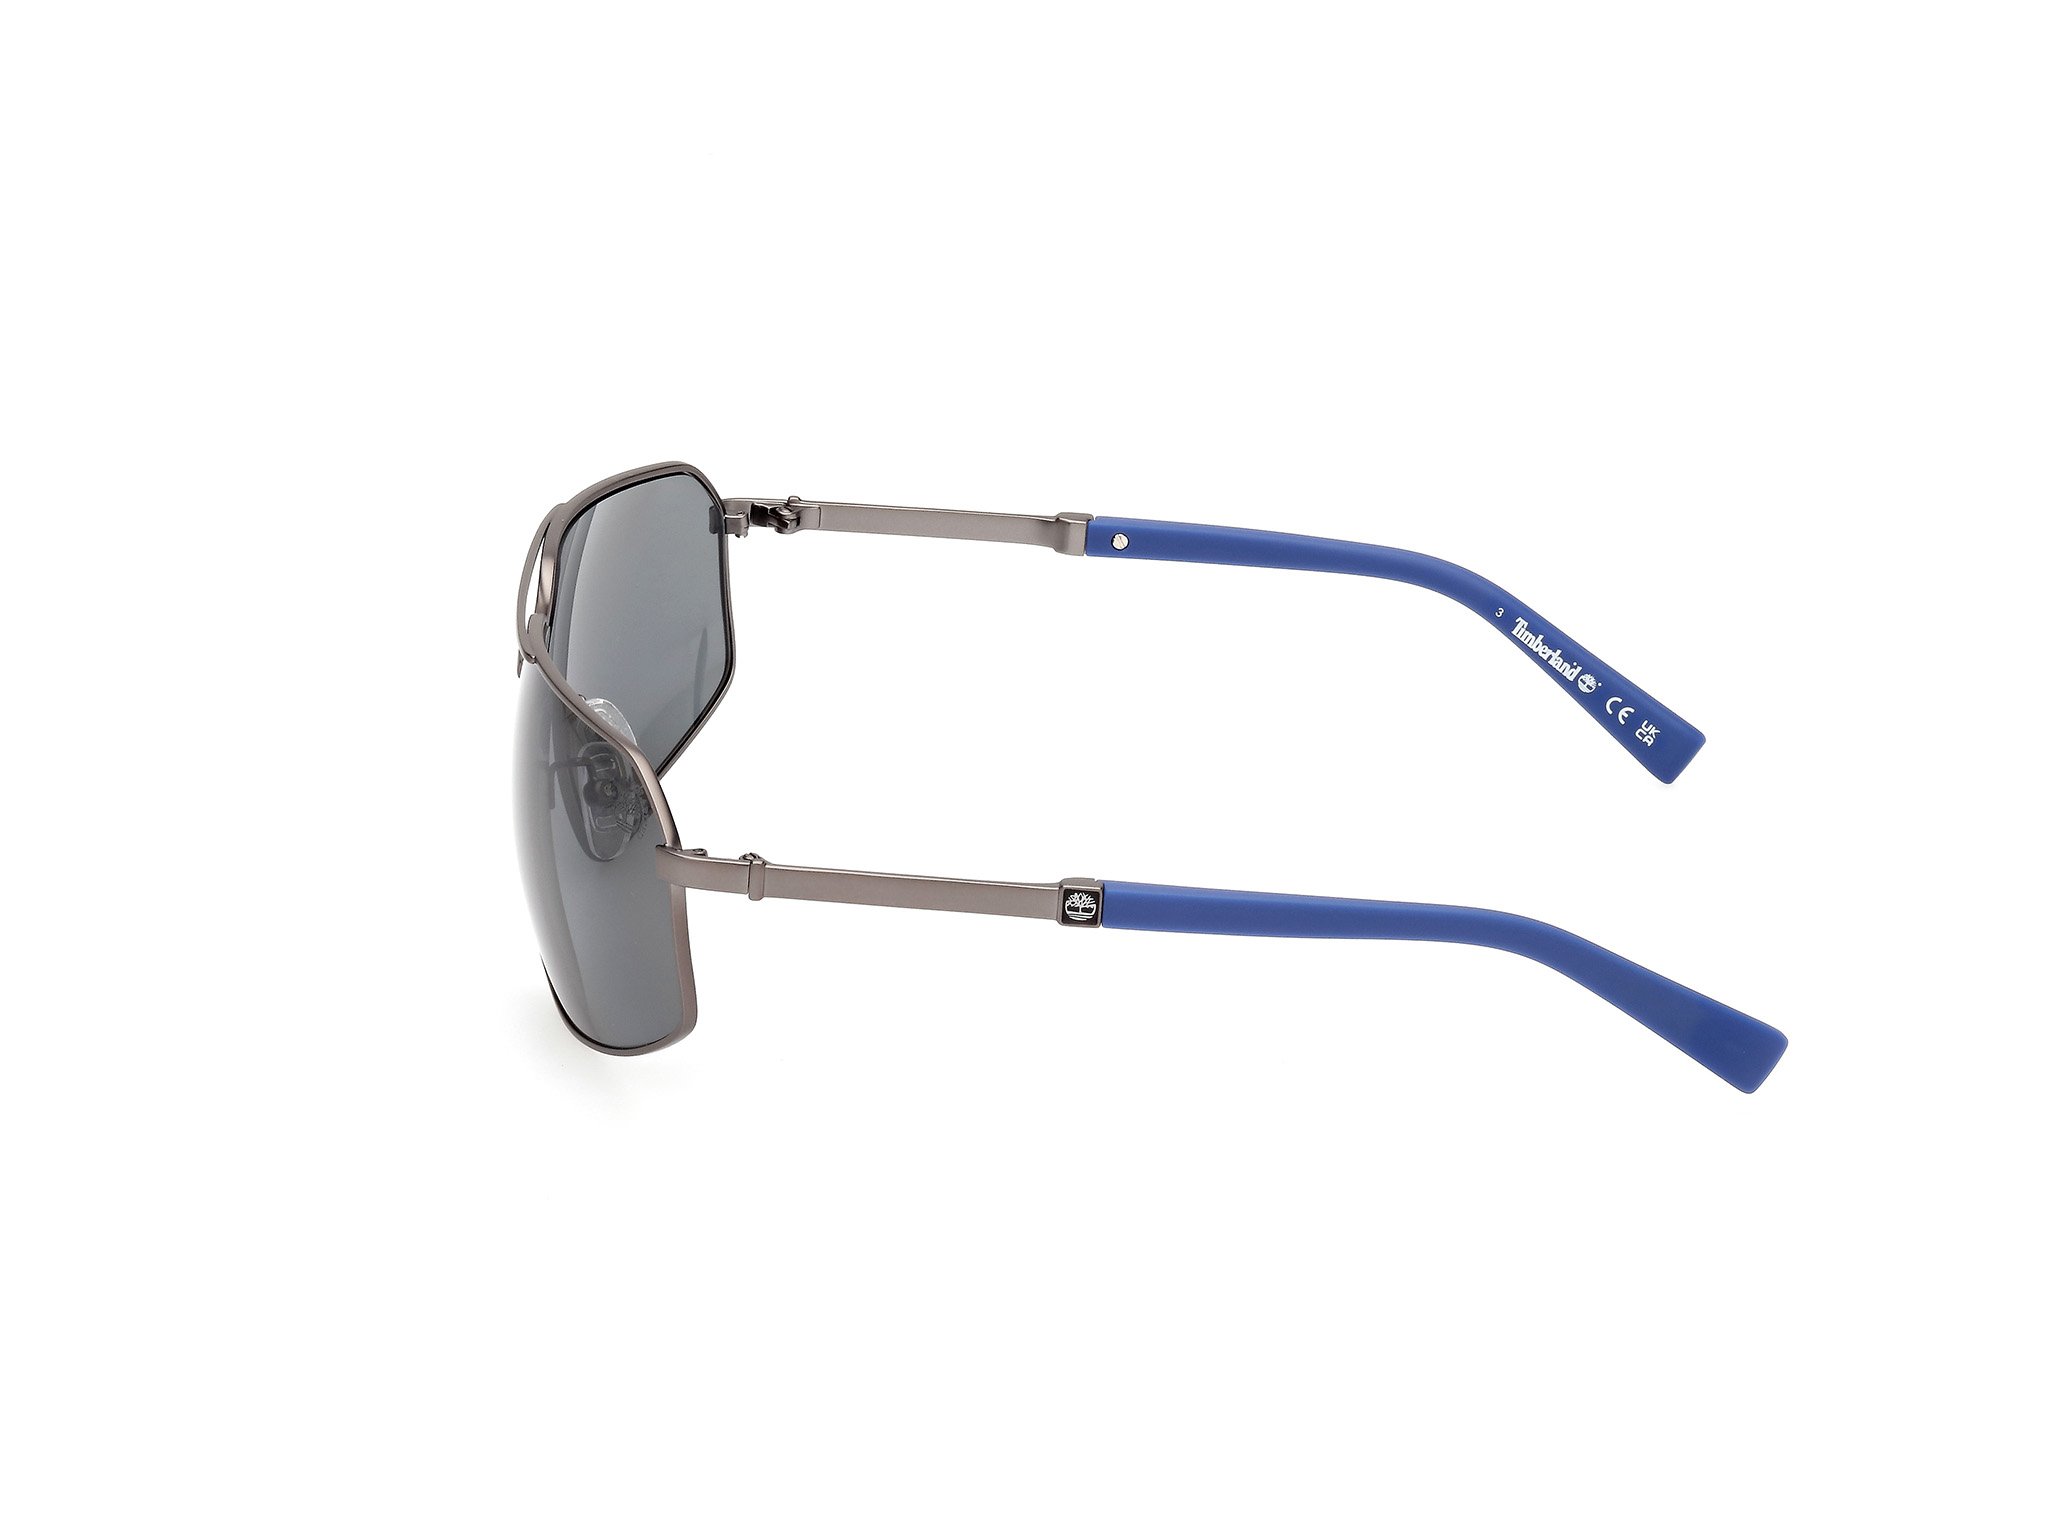 Das Bild zeigt die Sonnenbrille TB9341-H 07D von der Marke Timberland in grau/blau.